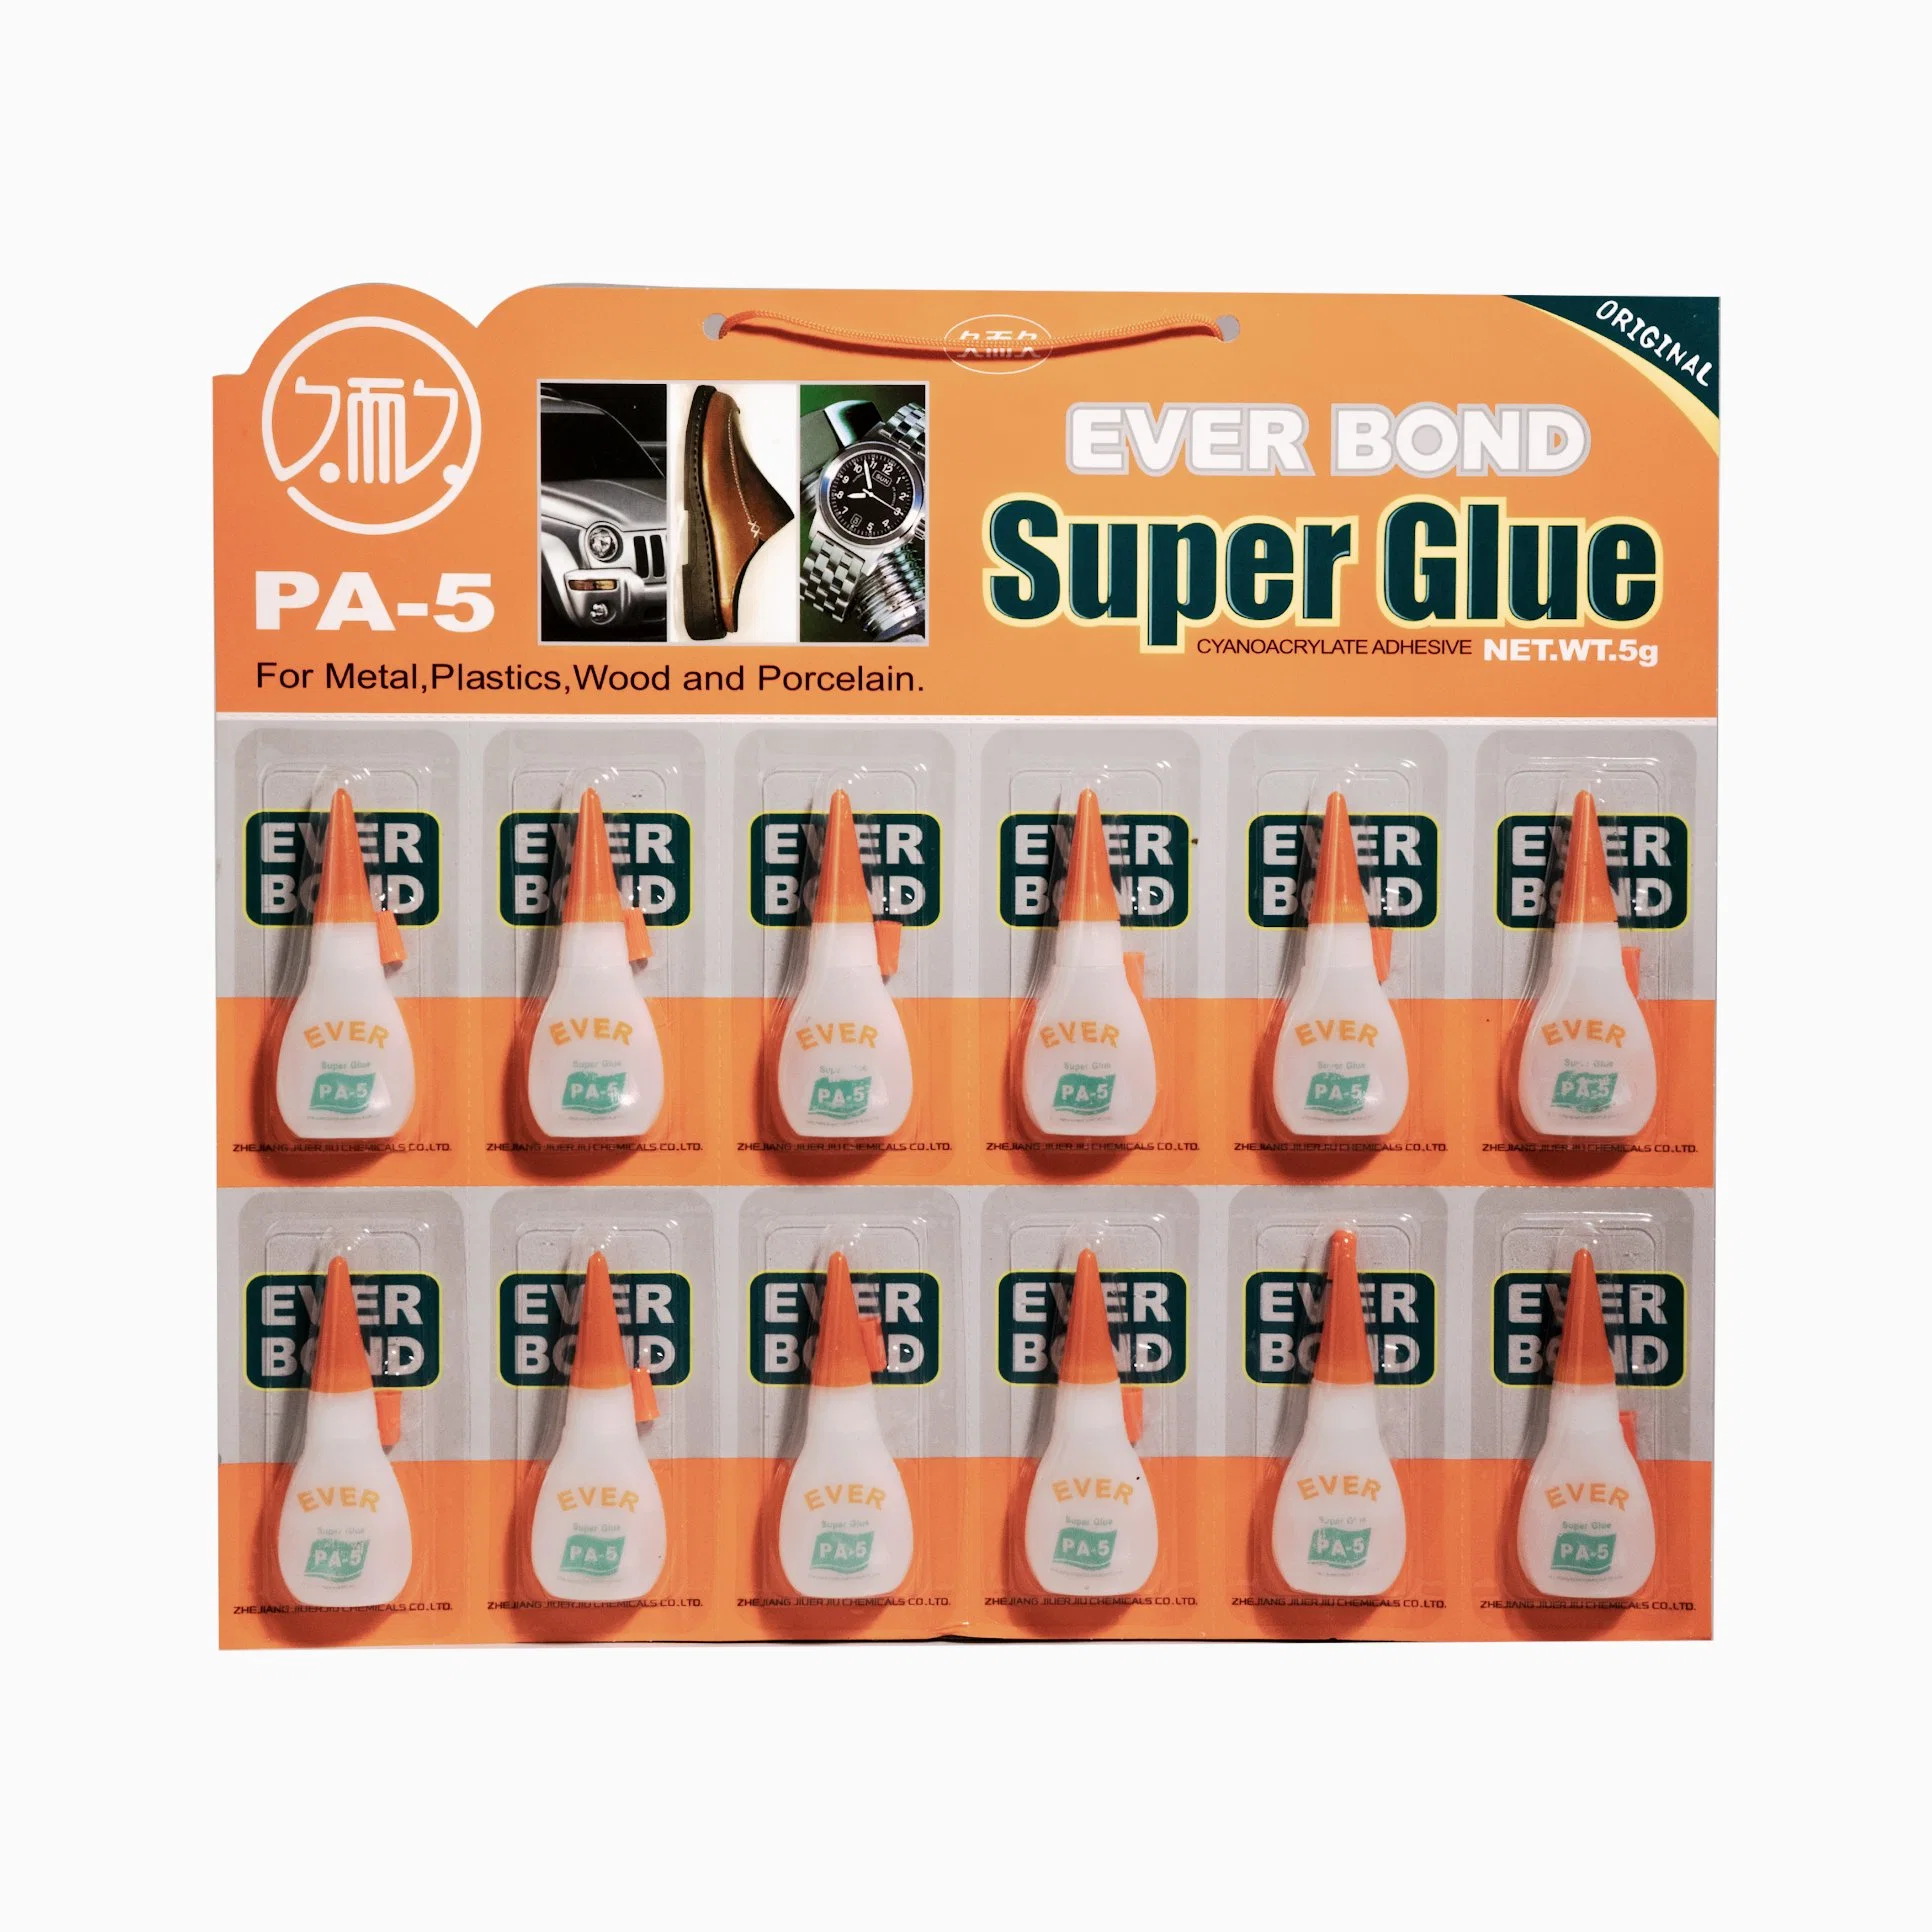 3G Glue Sticks Chemical Adhesive Super Glue Work on Glass